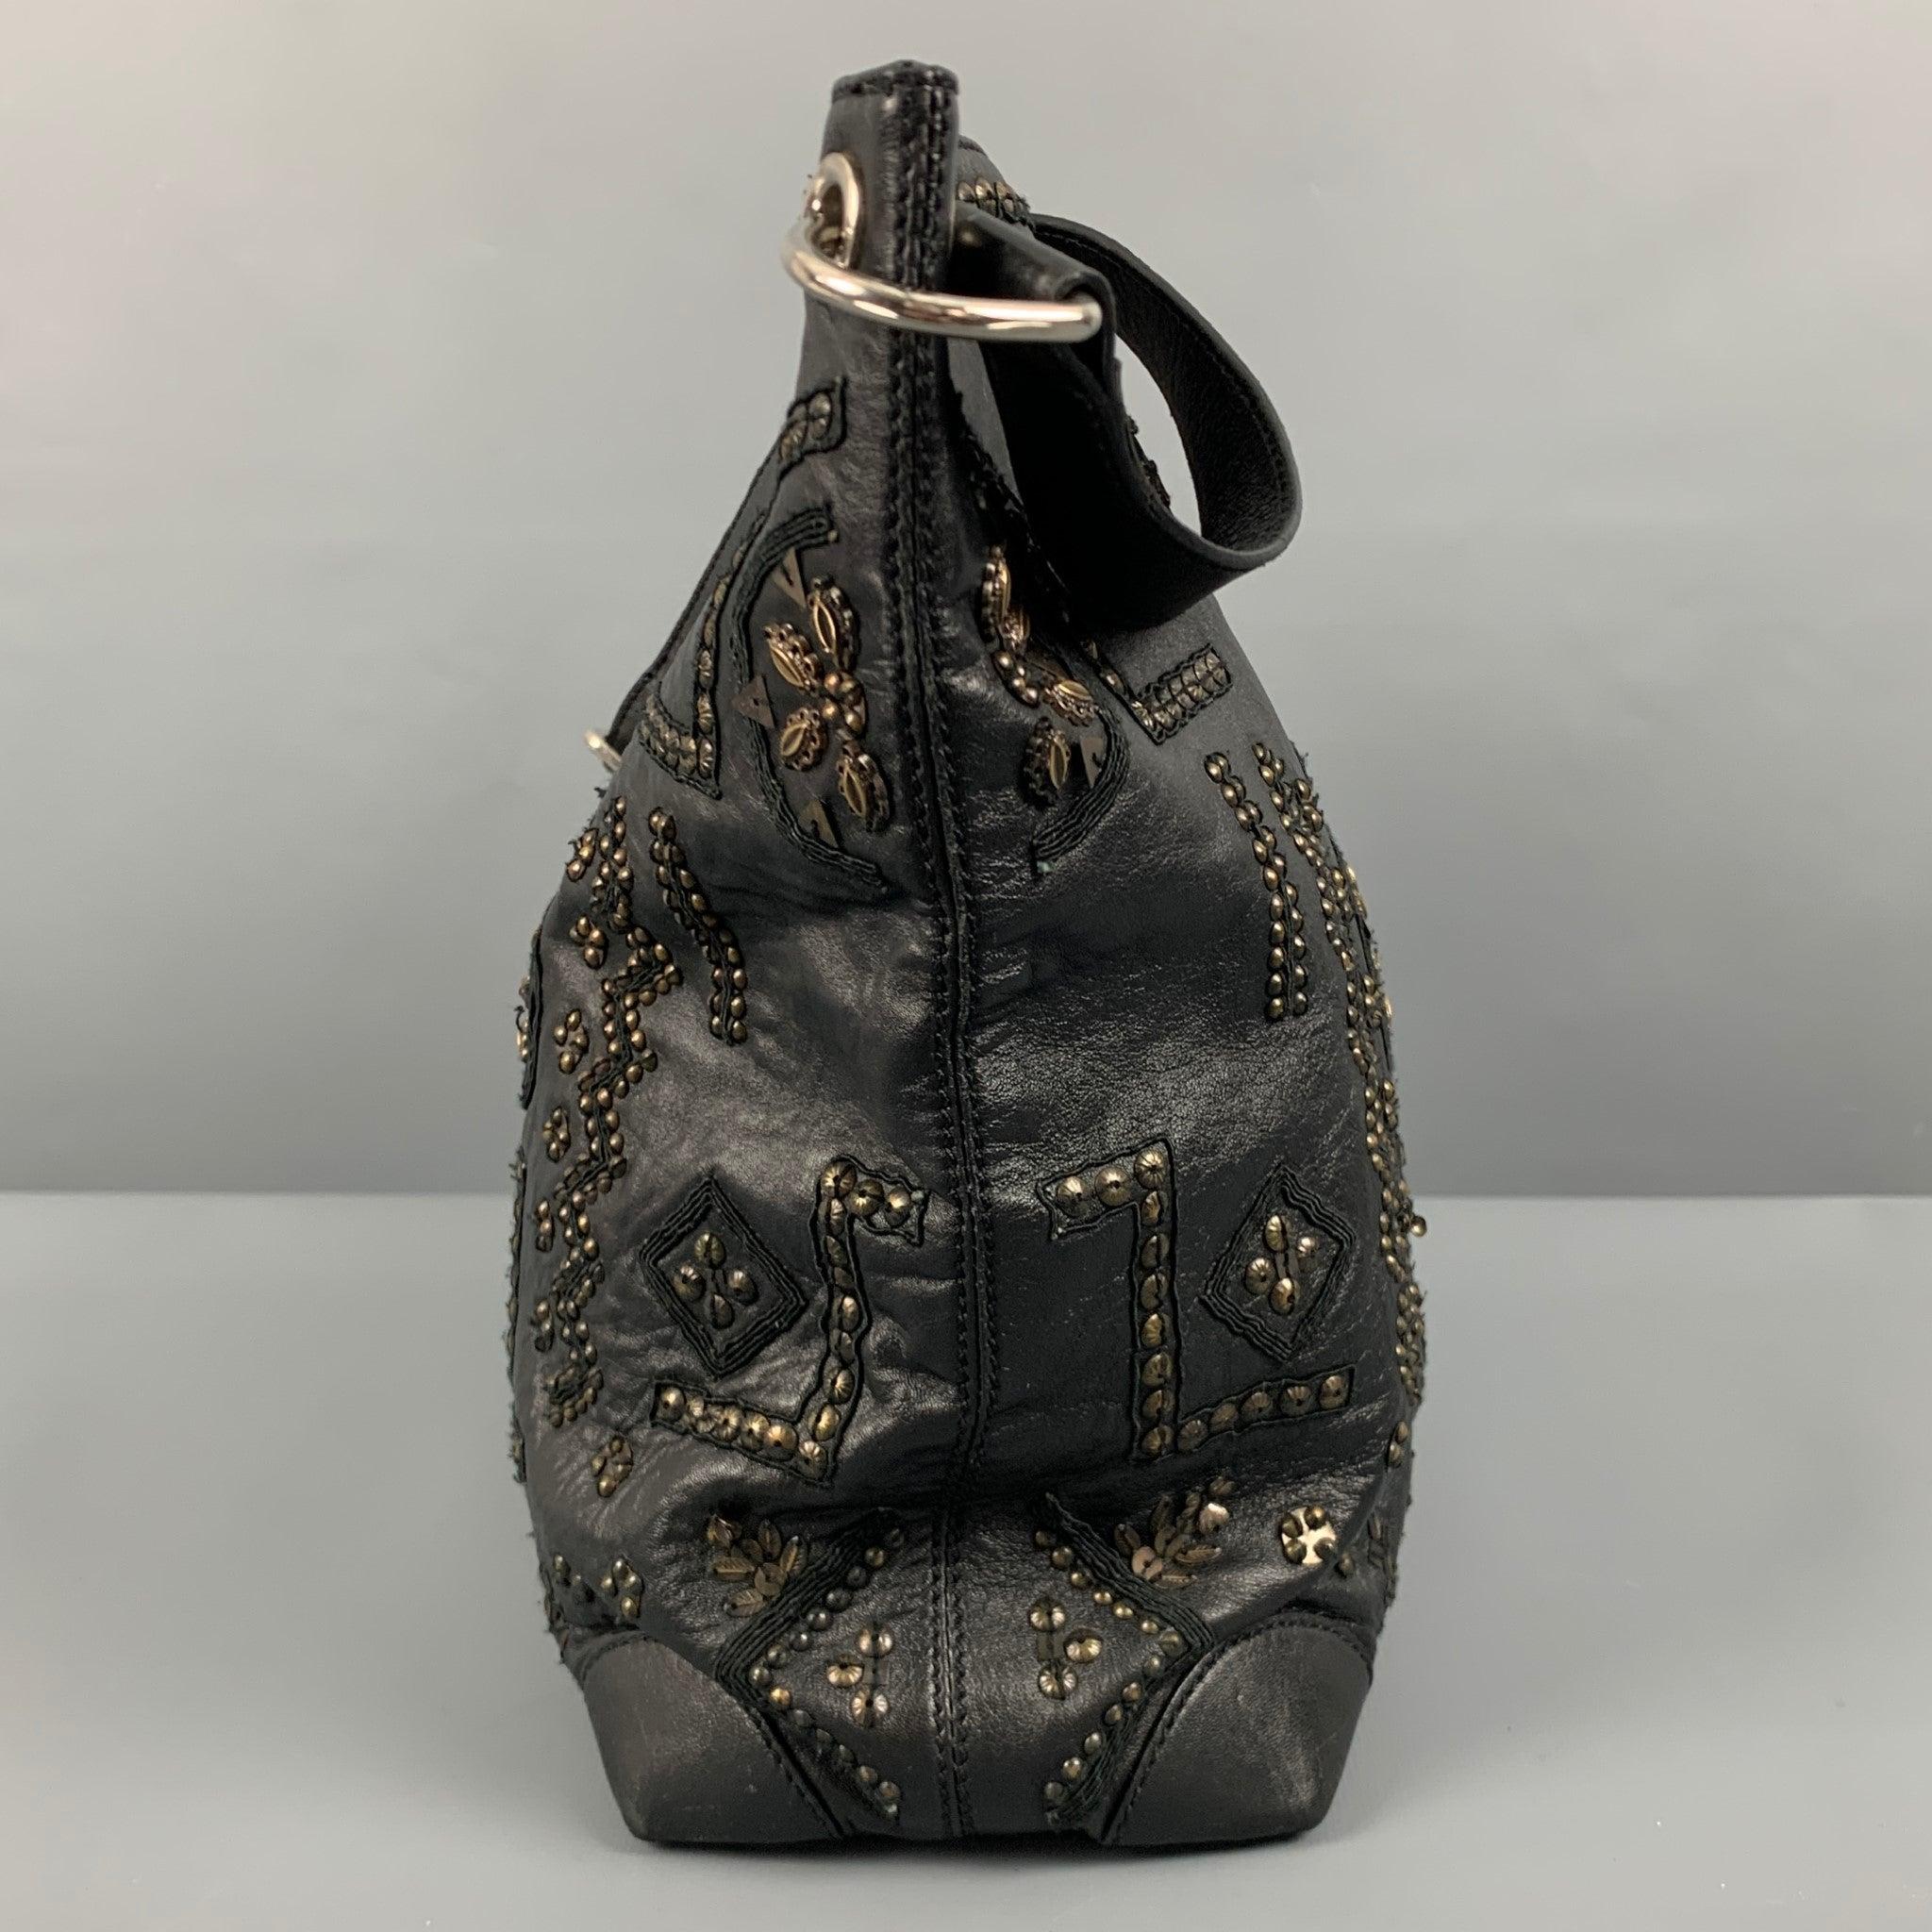 OSCAR DE LA RENTA Black Gold Studded Leather Handbag For Sale 1